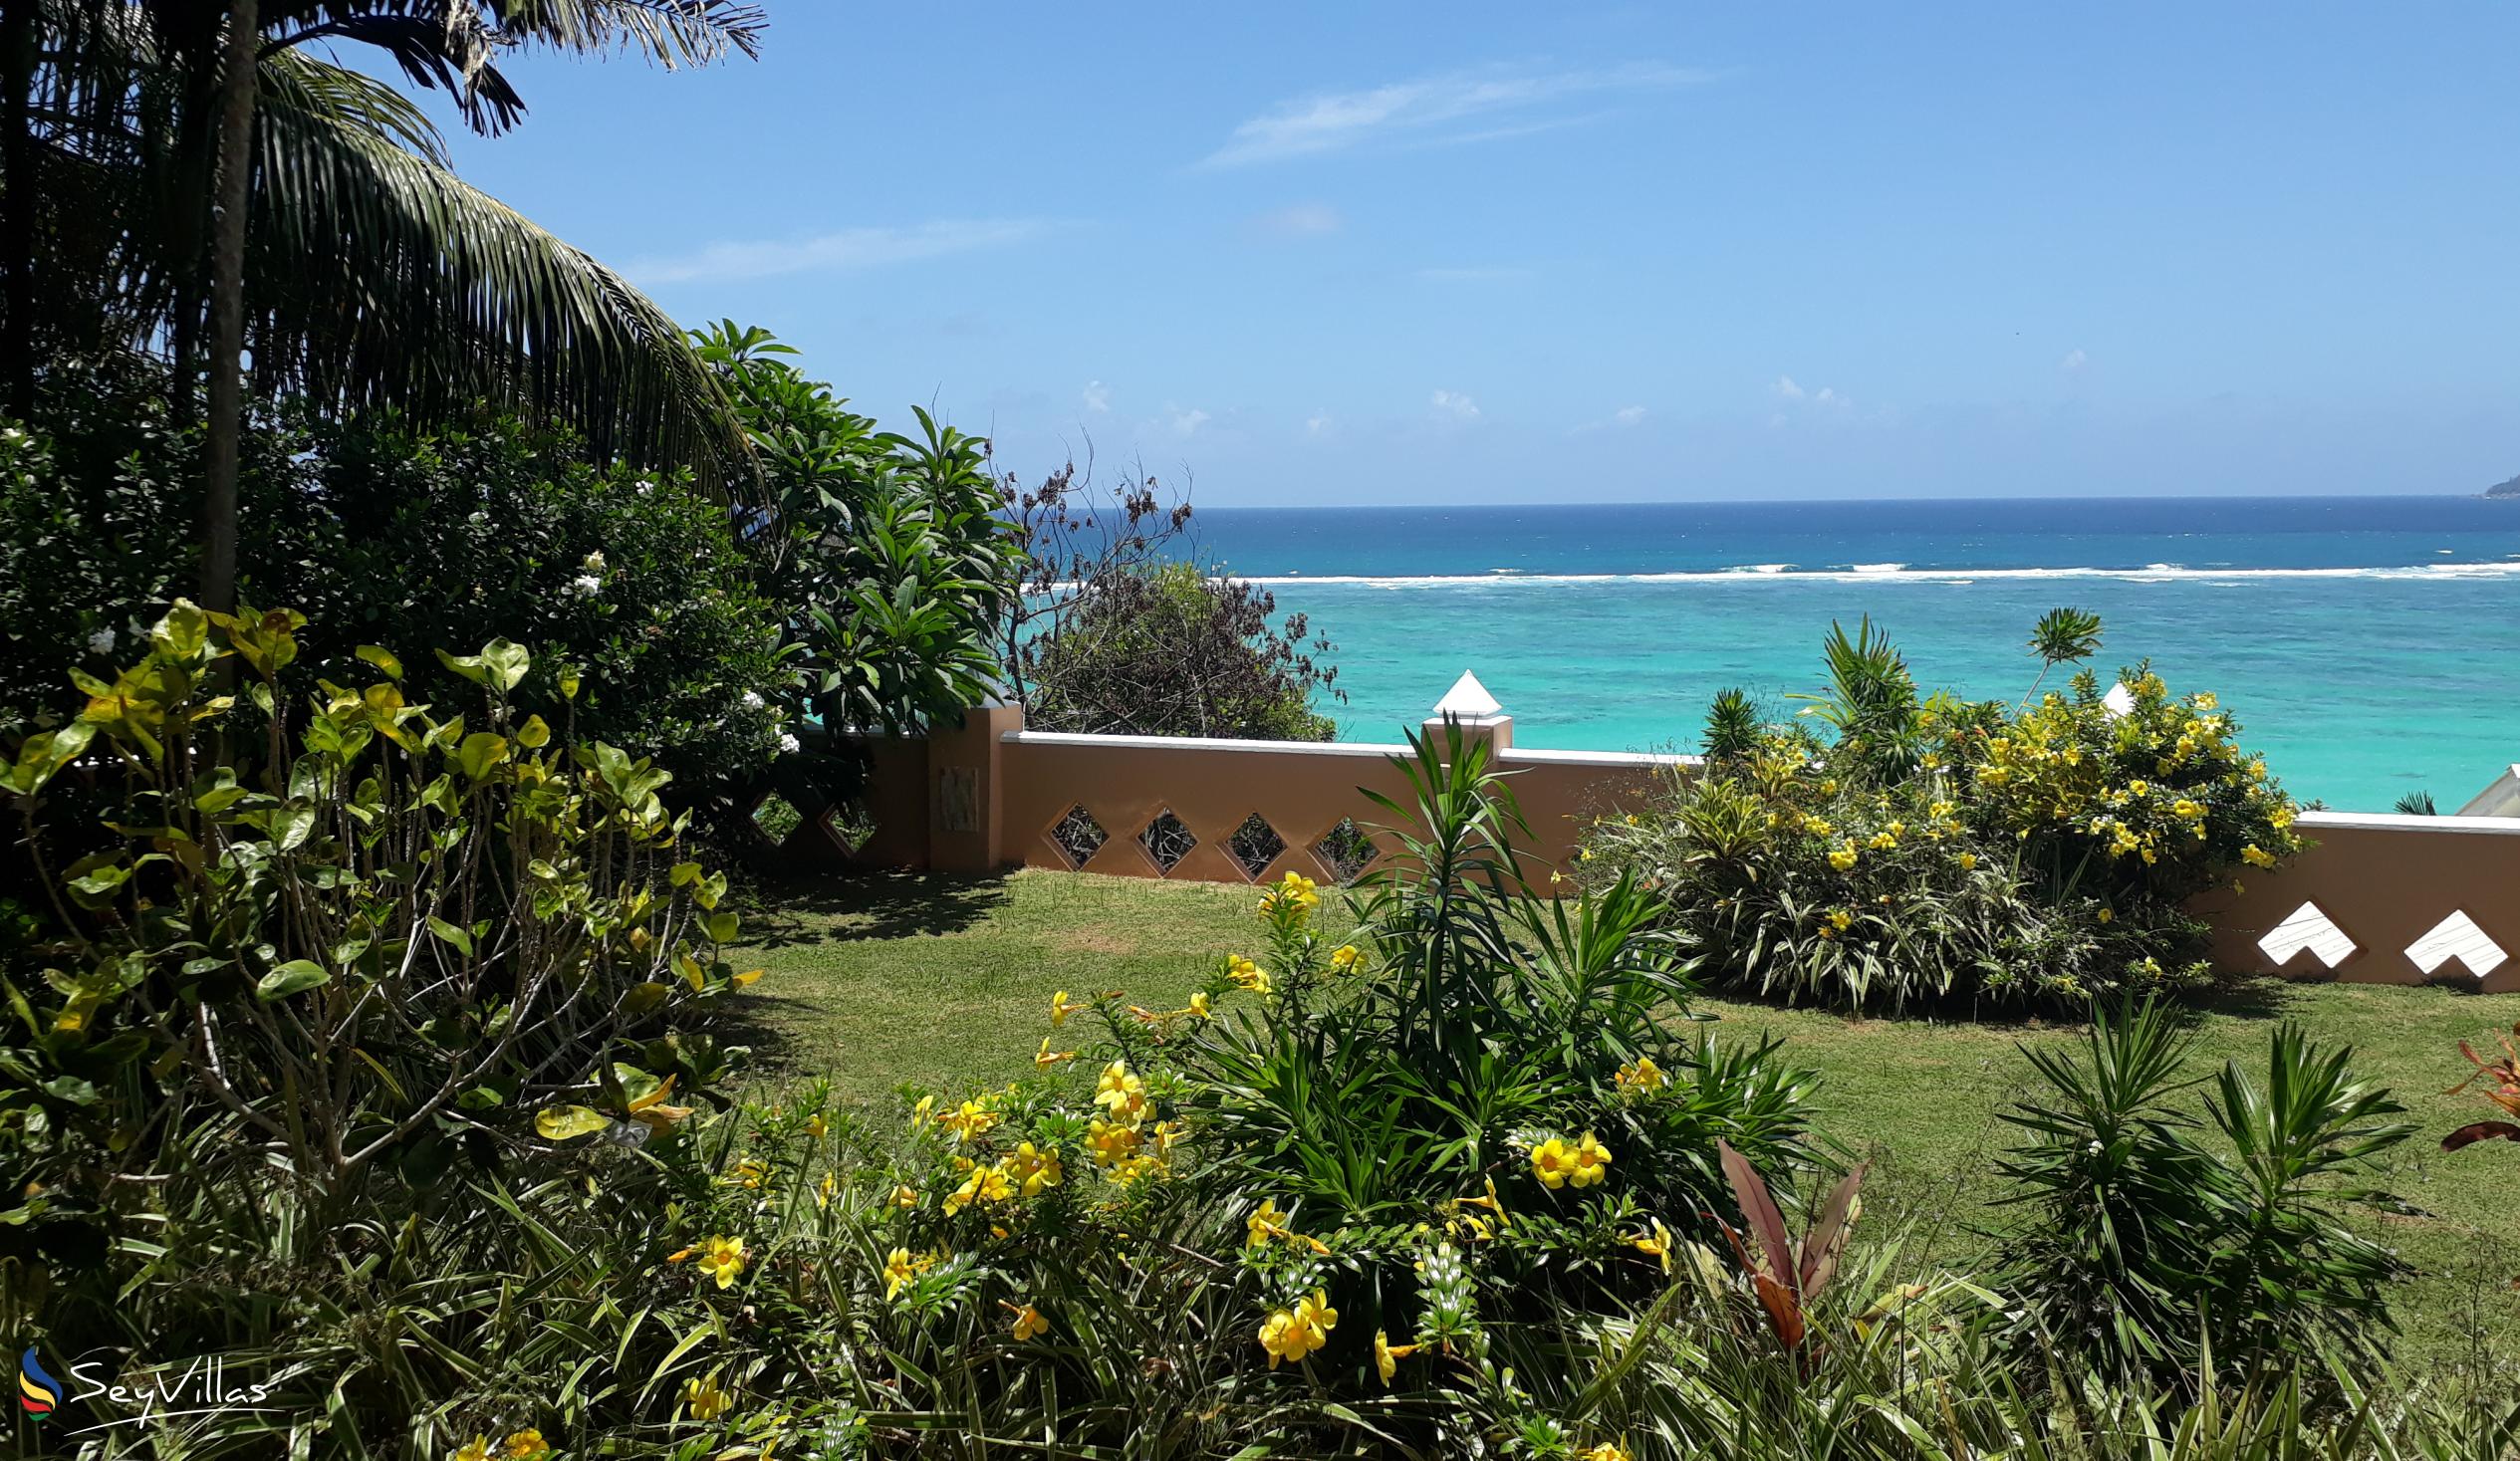 Photo 26: Au Fond de Mer View - Outdoor area - Mahé (Seychelles)